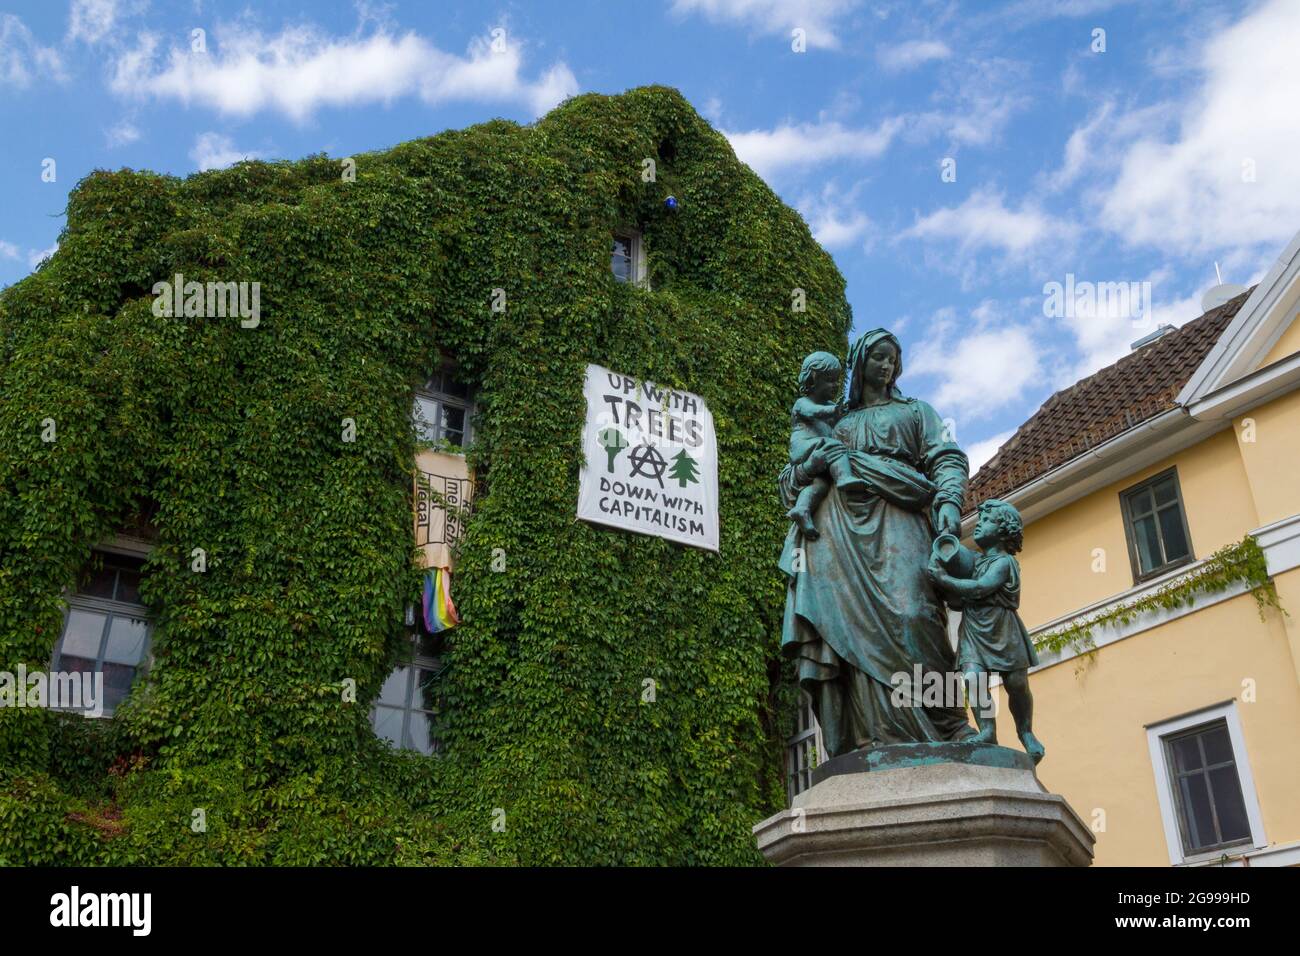 Mutter mit Kindern Statue (Donndorfbrunnen-Statue) und Haus mit 'hoch mit Bäumen runter mit Kapitalismus' Schild in Weimar, Deutschland Stockfoto